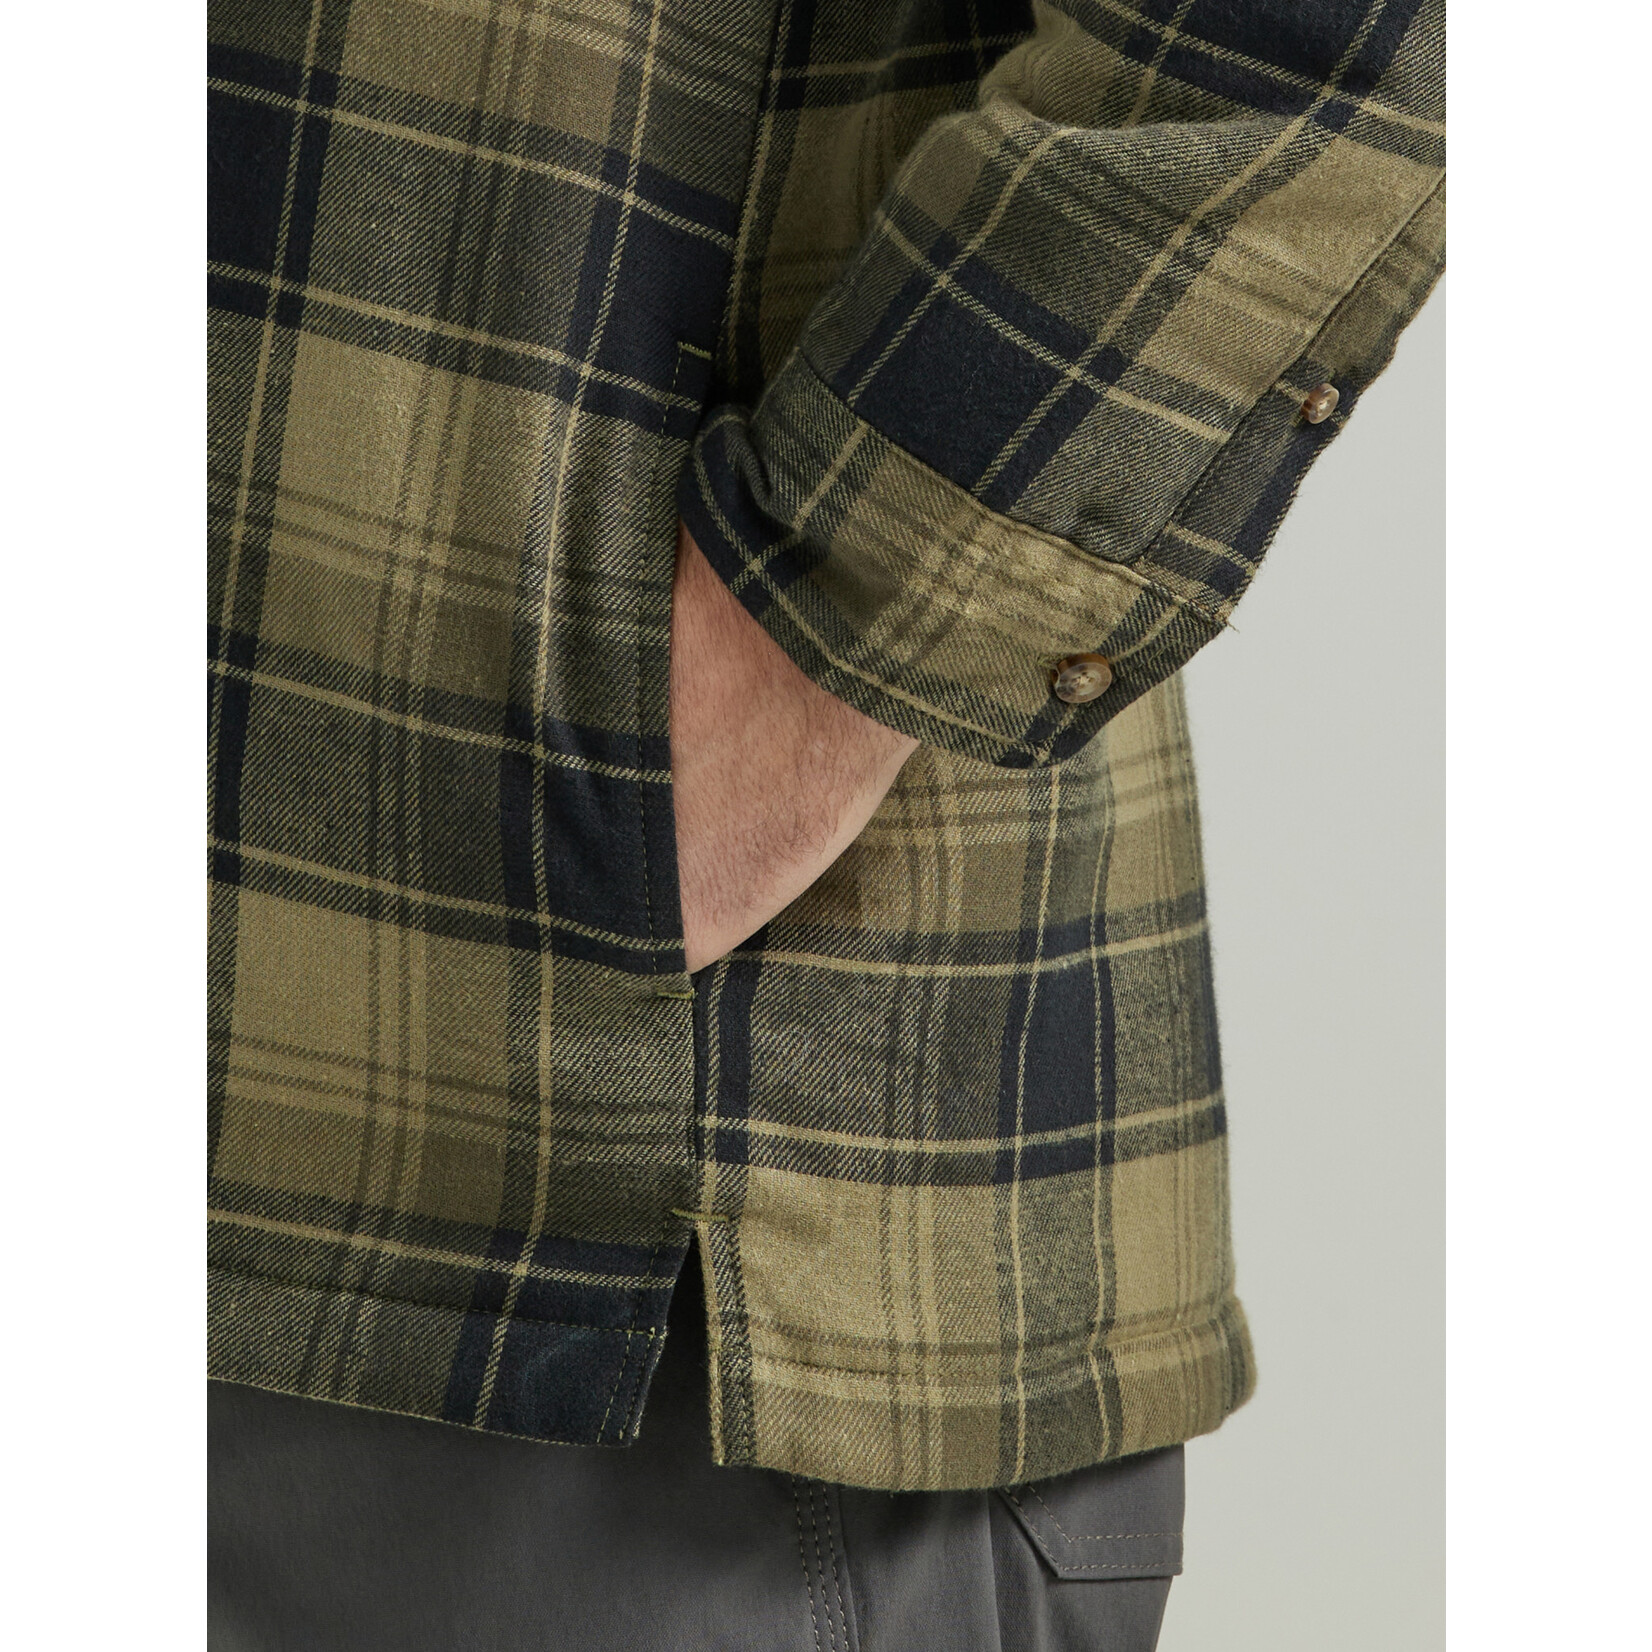 Wrangler Wrangler Men's Riggs Workwear Hooded Flannel - 112330072